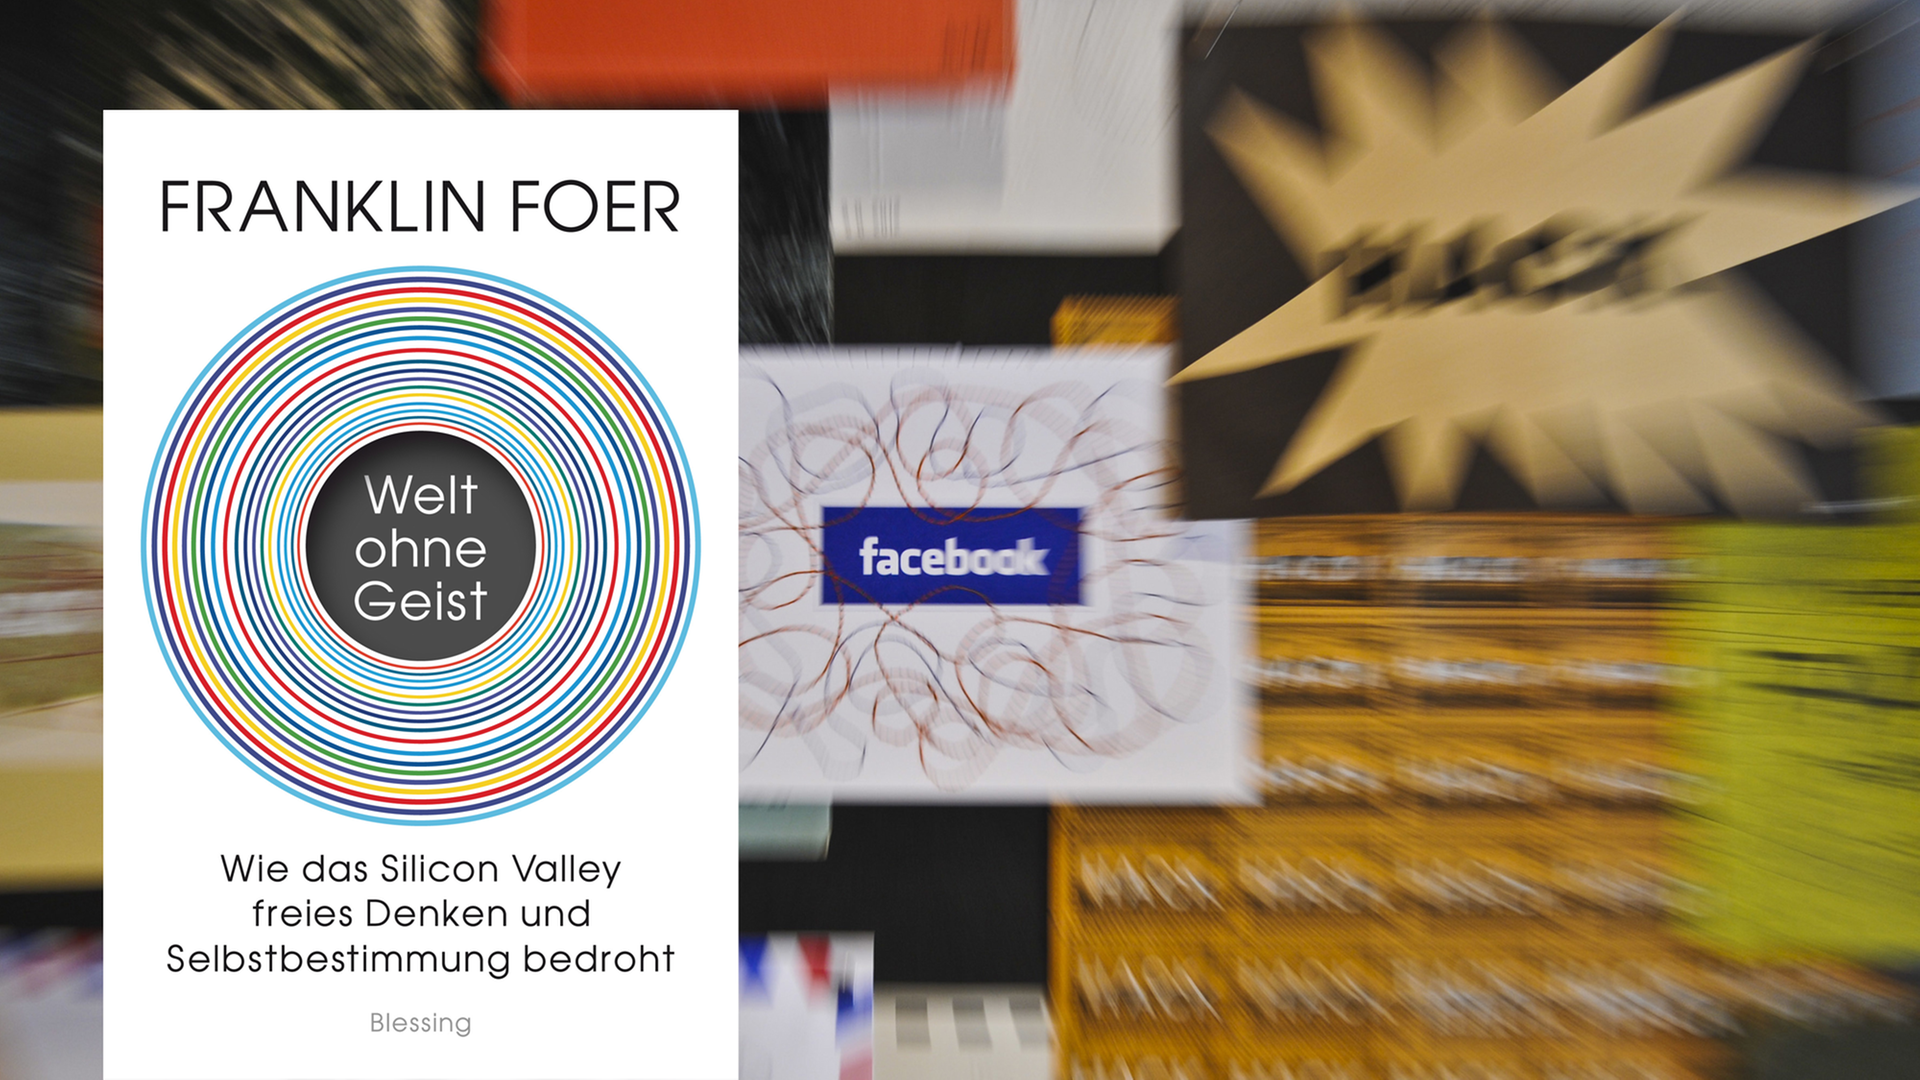 Cover von Franklin Foer "Welt ohne Geist", im Hintergrund ist ein verzerrtes Facebook-Logo zu sehen